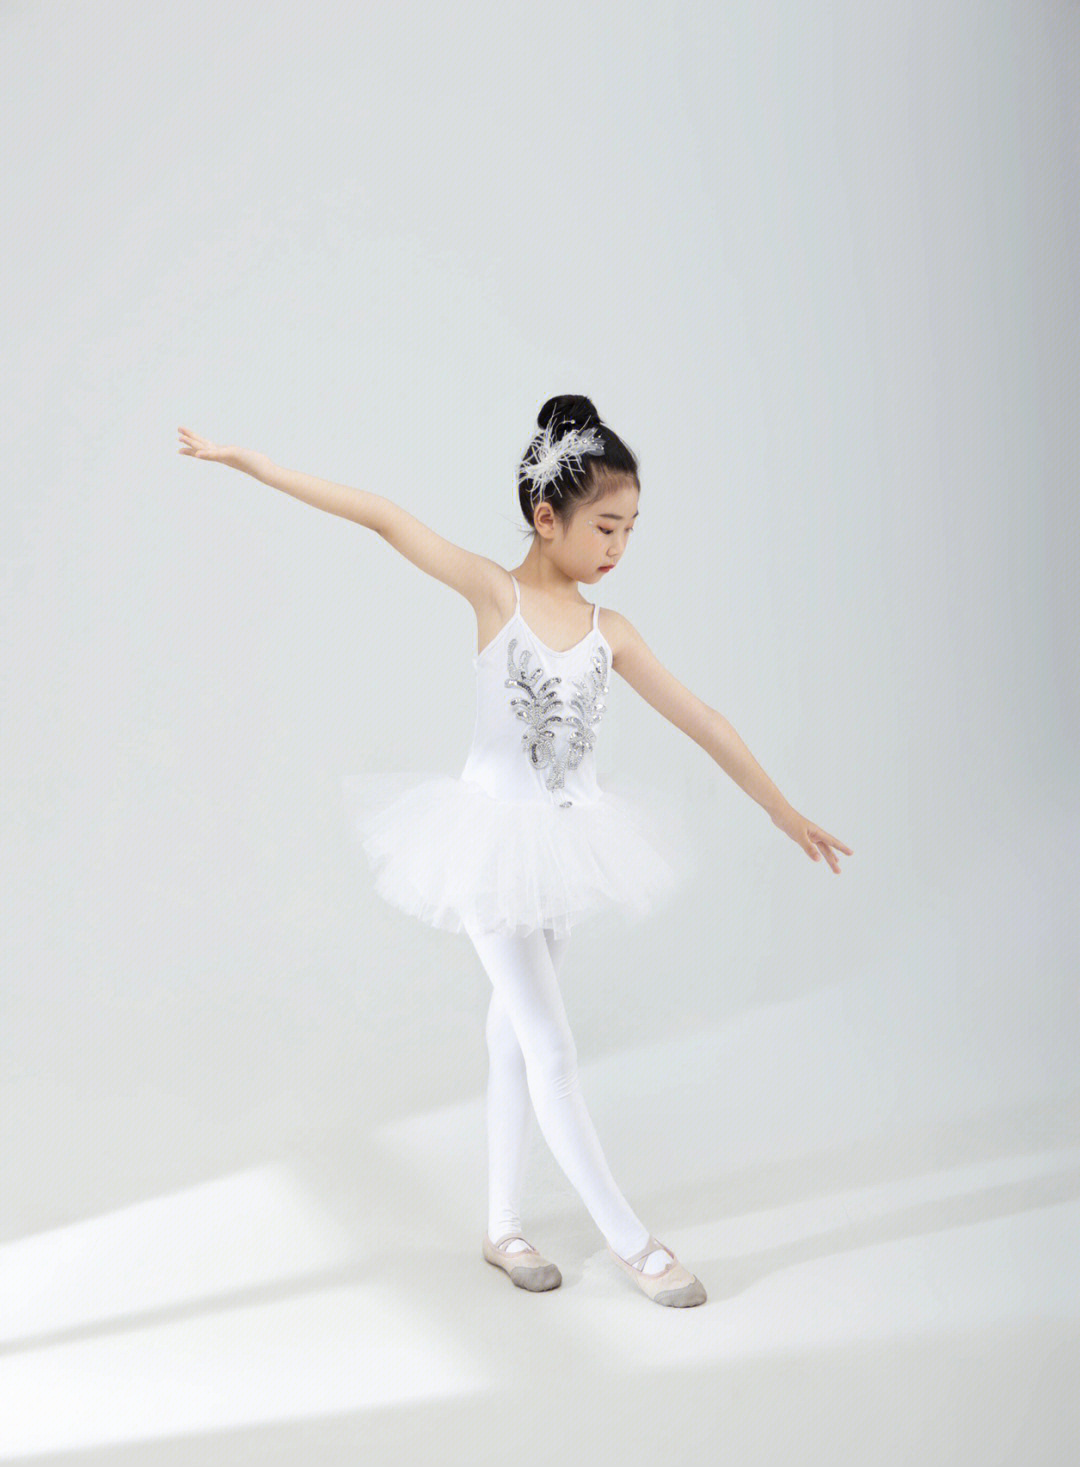 少儿中国舞艺术照图片